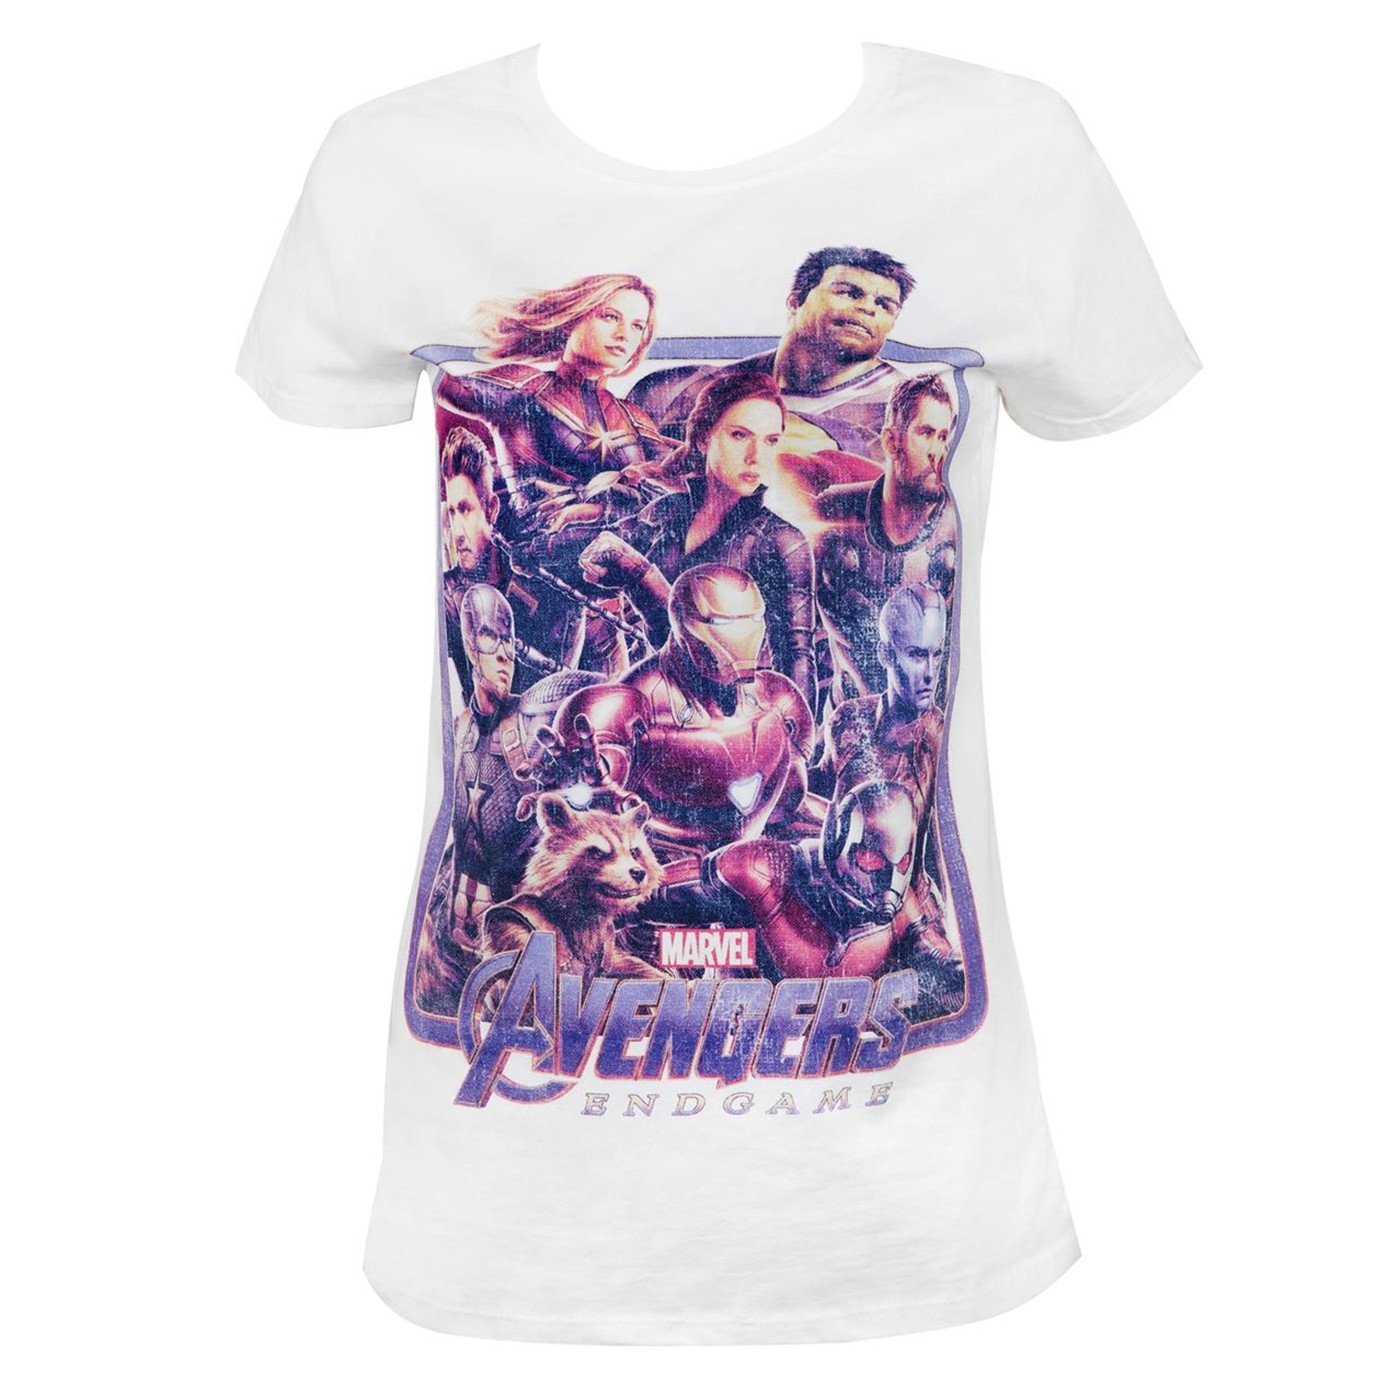 Avenger Endgame Group Shot Women's T-Shirt